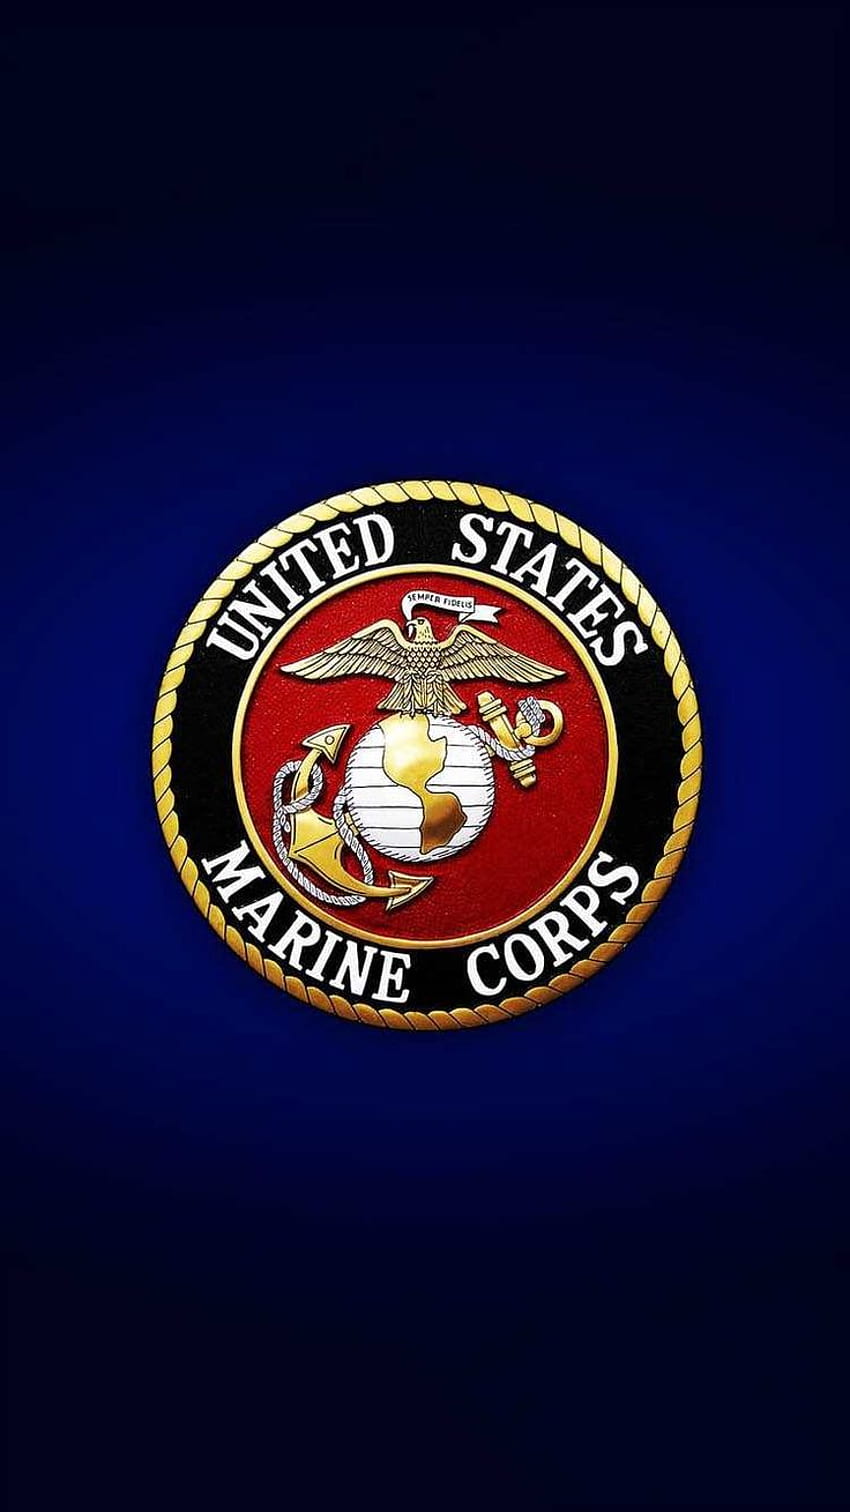 Korpus piechoty morskiej Odkryj więcej amerykańskich sił zbrojnych, sił zbrojnych, korpusu piechoty morskiej, Korpusu piechoty morskiej Stanów Zjednoczonych, Stanów Zjednoczonych. Korpus piechoty morskiej, Usmc, Marine, Marine Logo Tapeta na telefon HD